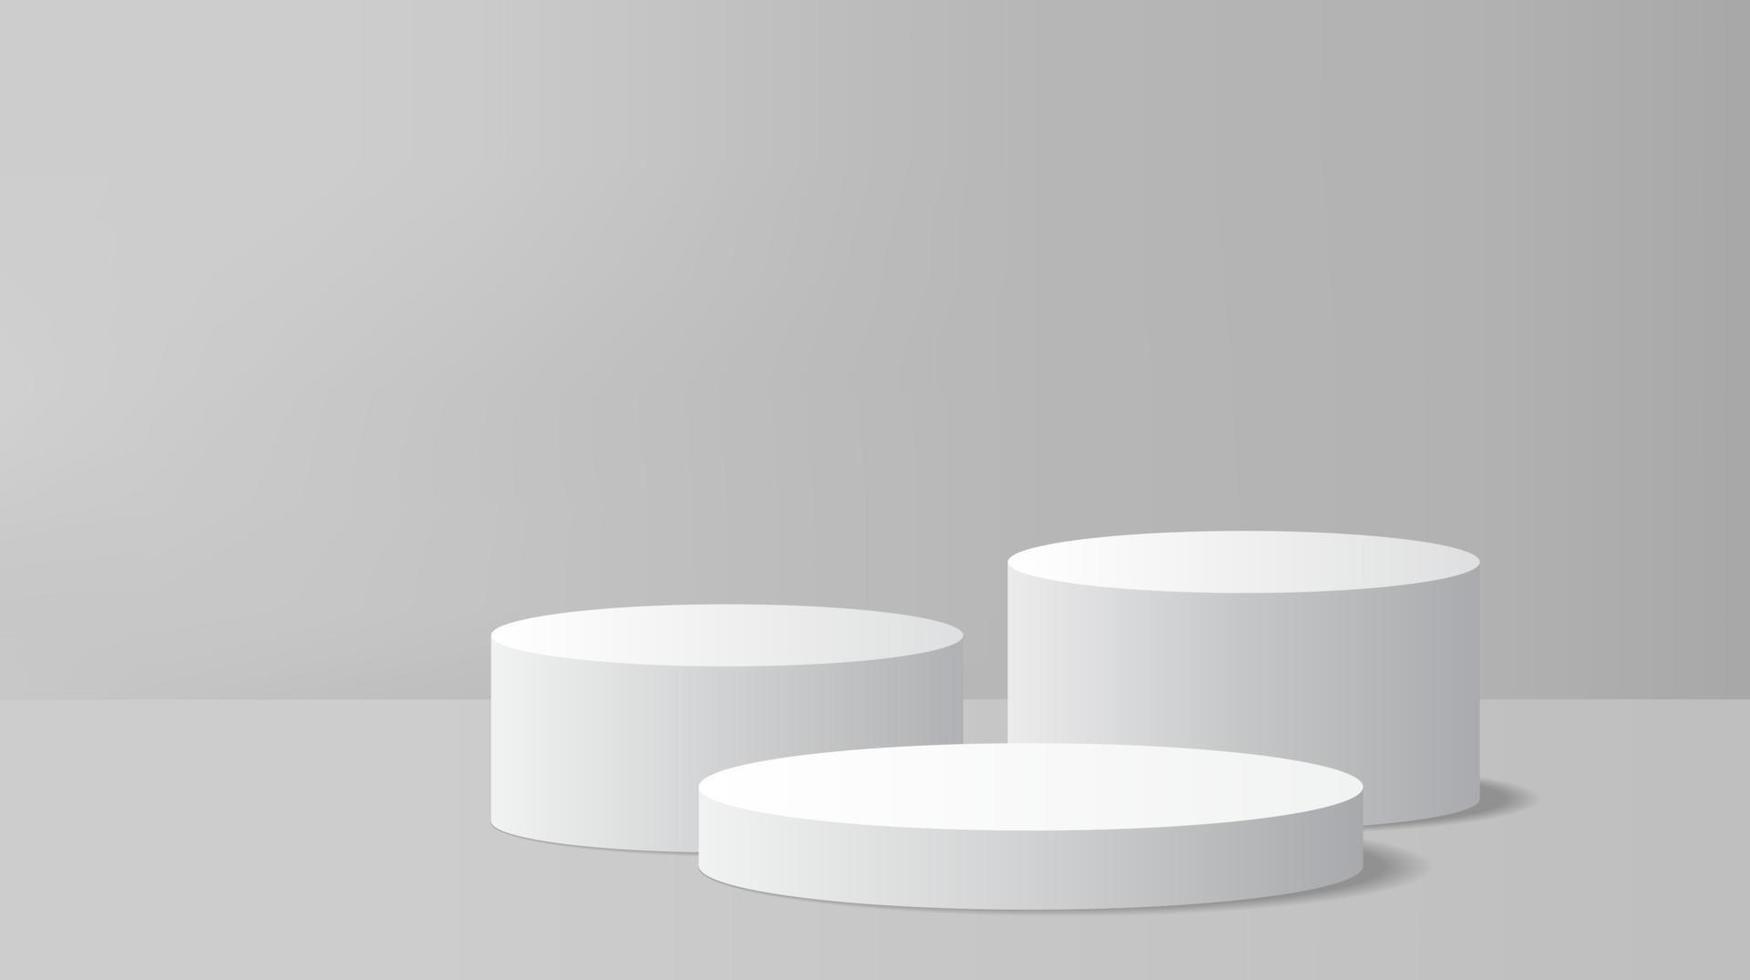 abstrakt grau Anzeige Hintergrund mit 3d machen Zylinder Sockel Podium. grau minimal Mauer Szene zum Produkt Anzeige Präsentation. geometrisch Bühne Plattform Vektor